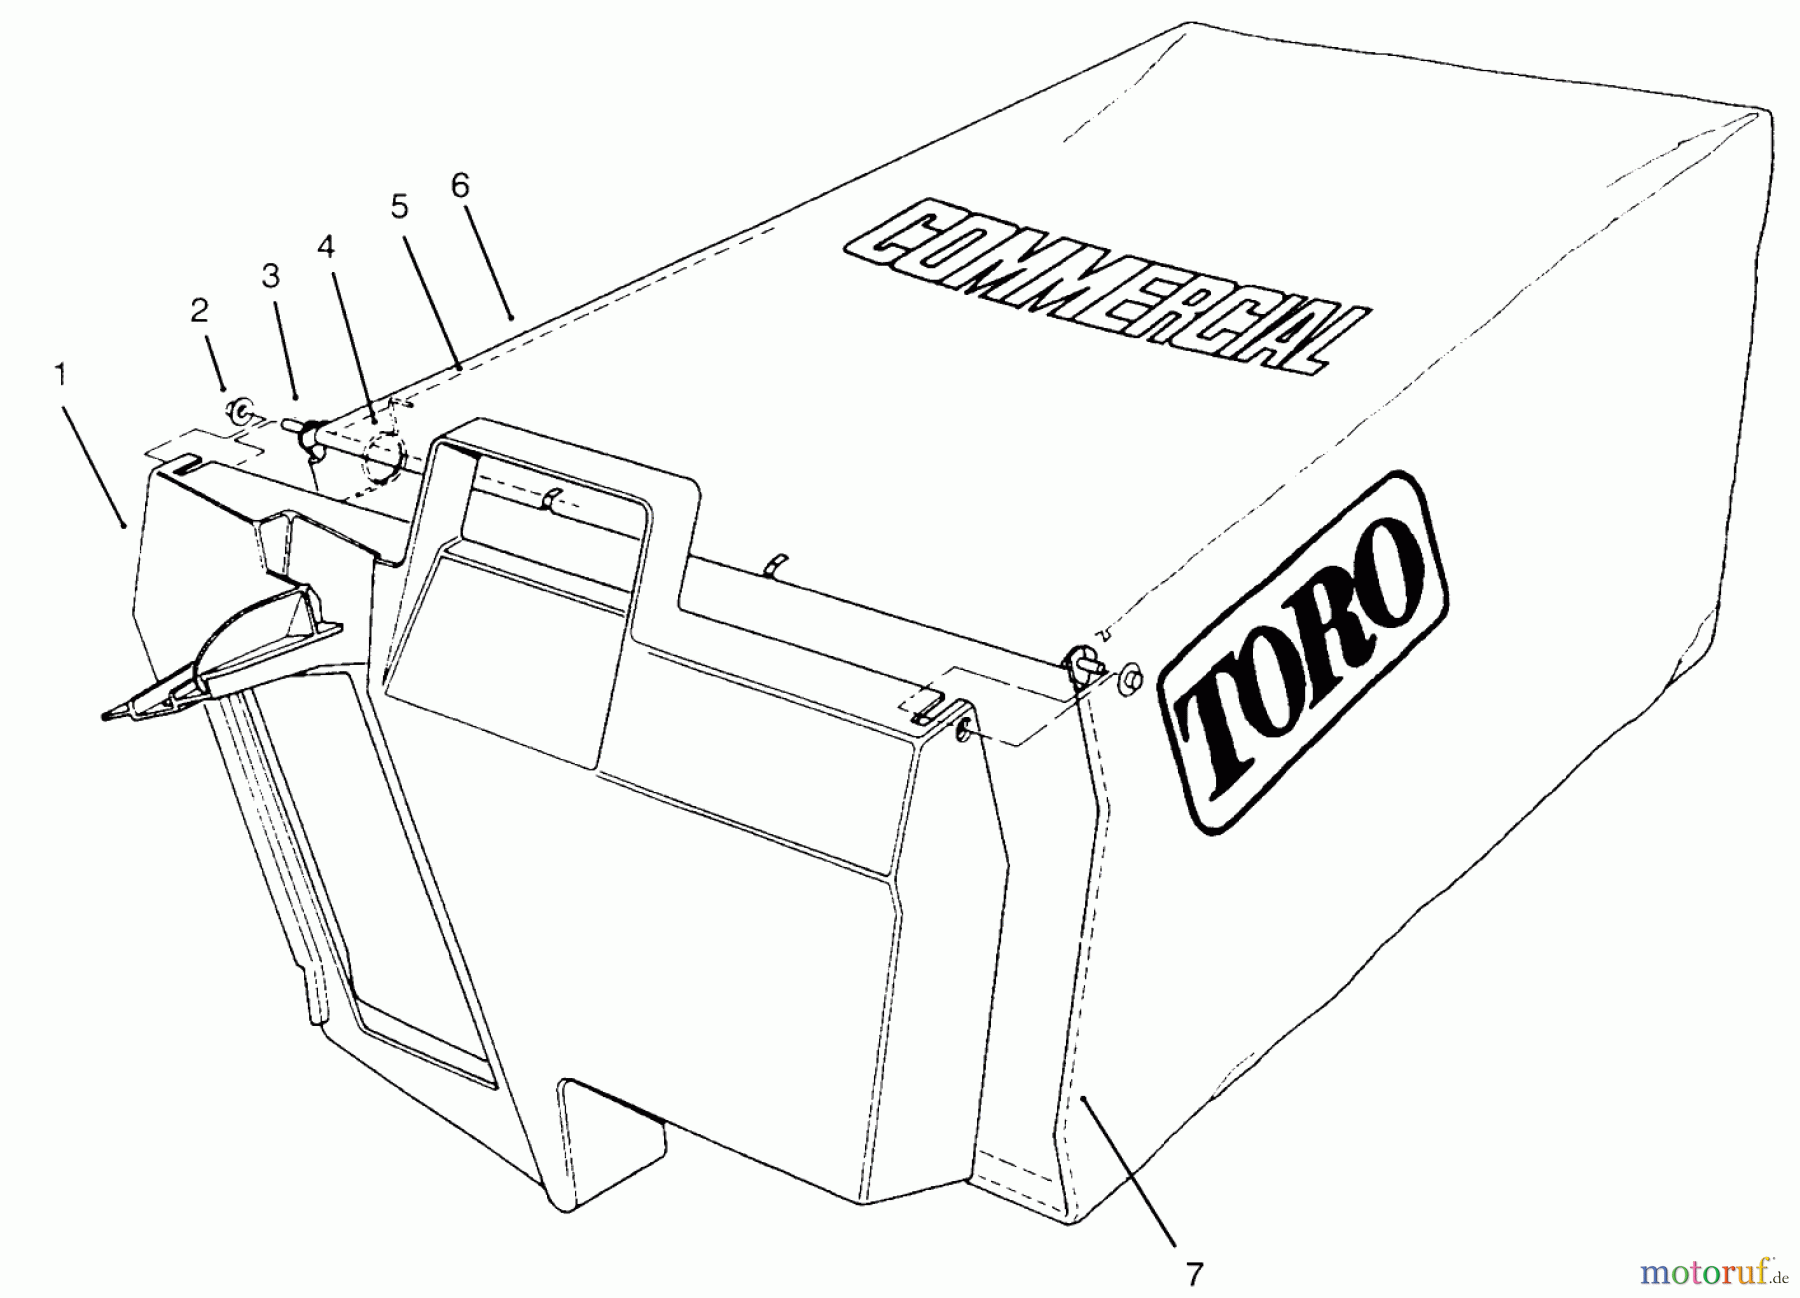  Toro Neu Mowers, Walk-Behind Seite 2 22153BC - Toro Lawnmower, 1995 (5900001-5999999) GRASS BAG ASSEMBLY NO. 11-5609